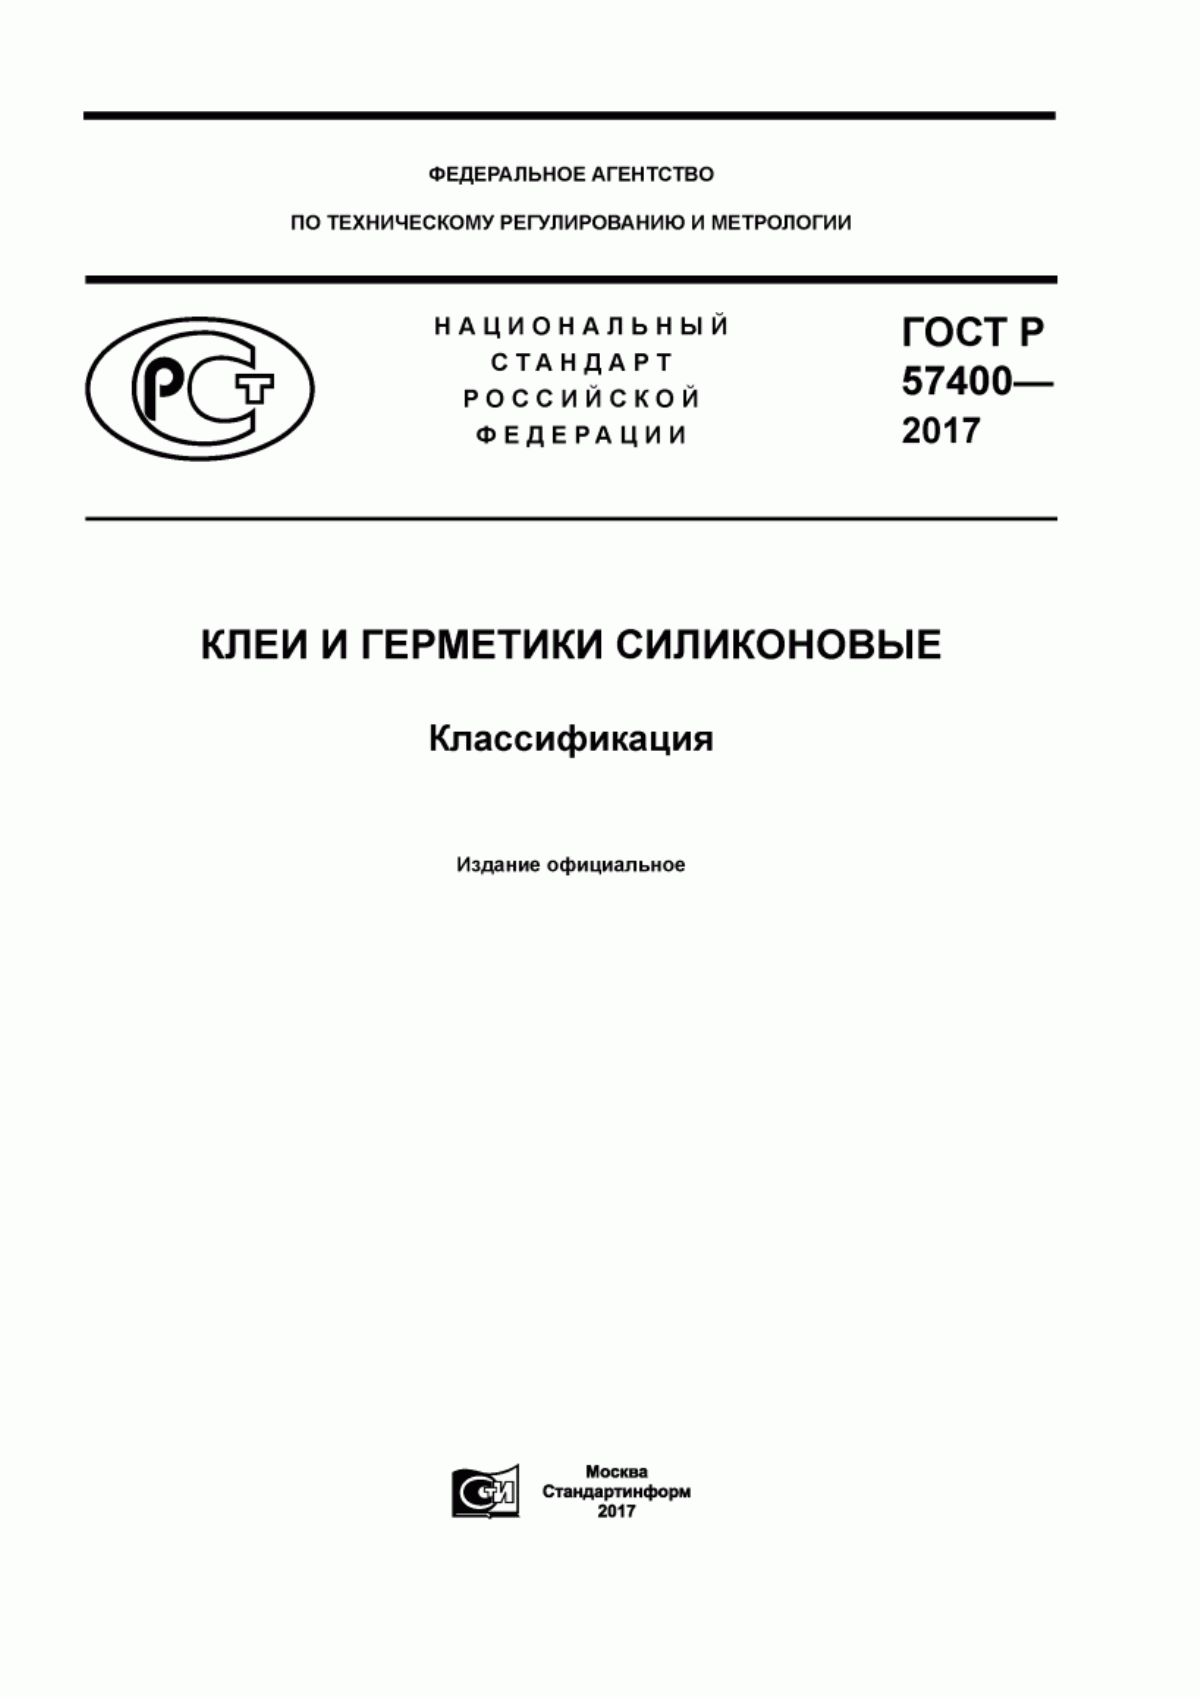 ГОСТ Р 57400-2017 Клеи и герметики силиконовые. Классификация